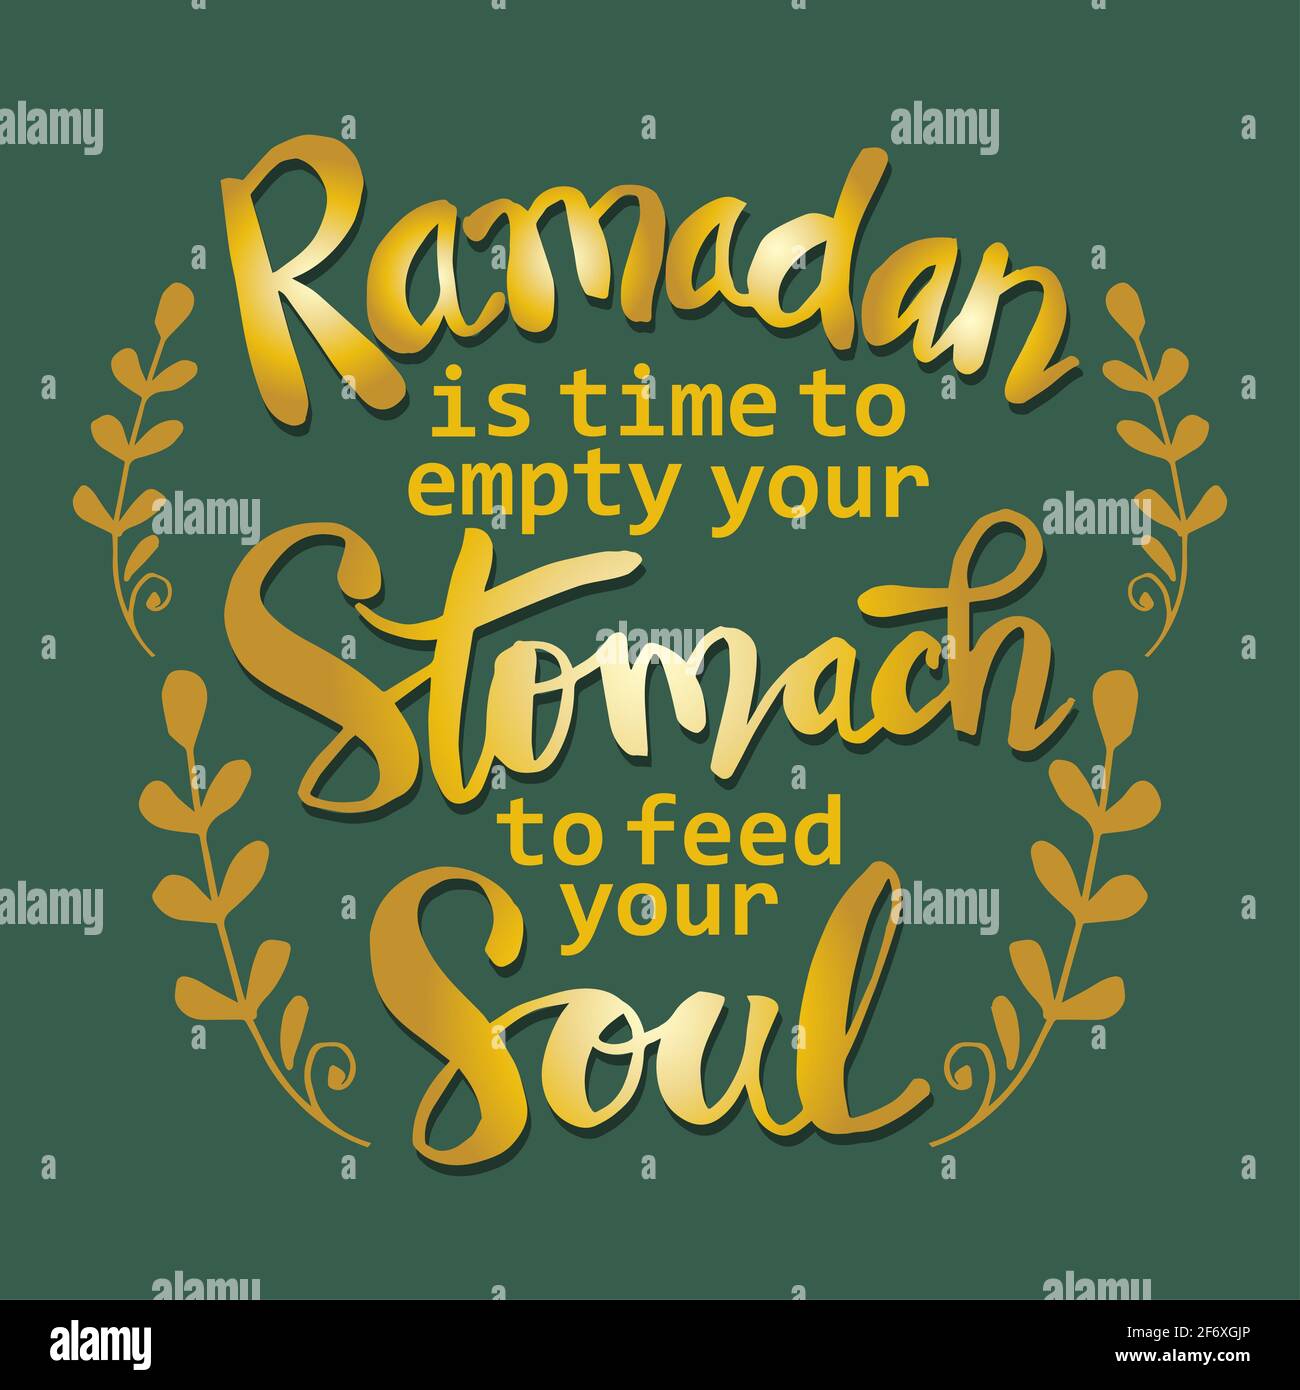 Ramadan è il momento di svuotare lo stomaco per nutrire la vostra anima. Ramadan citazioni. Foto Stock